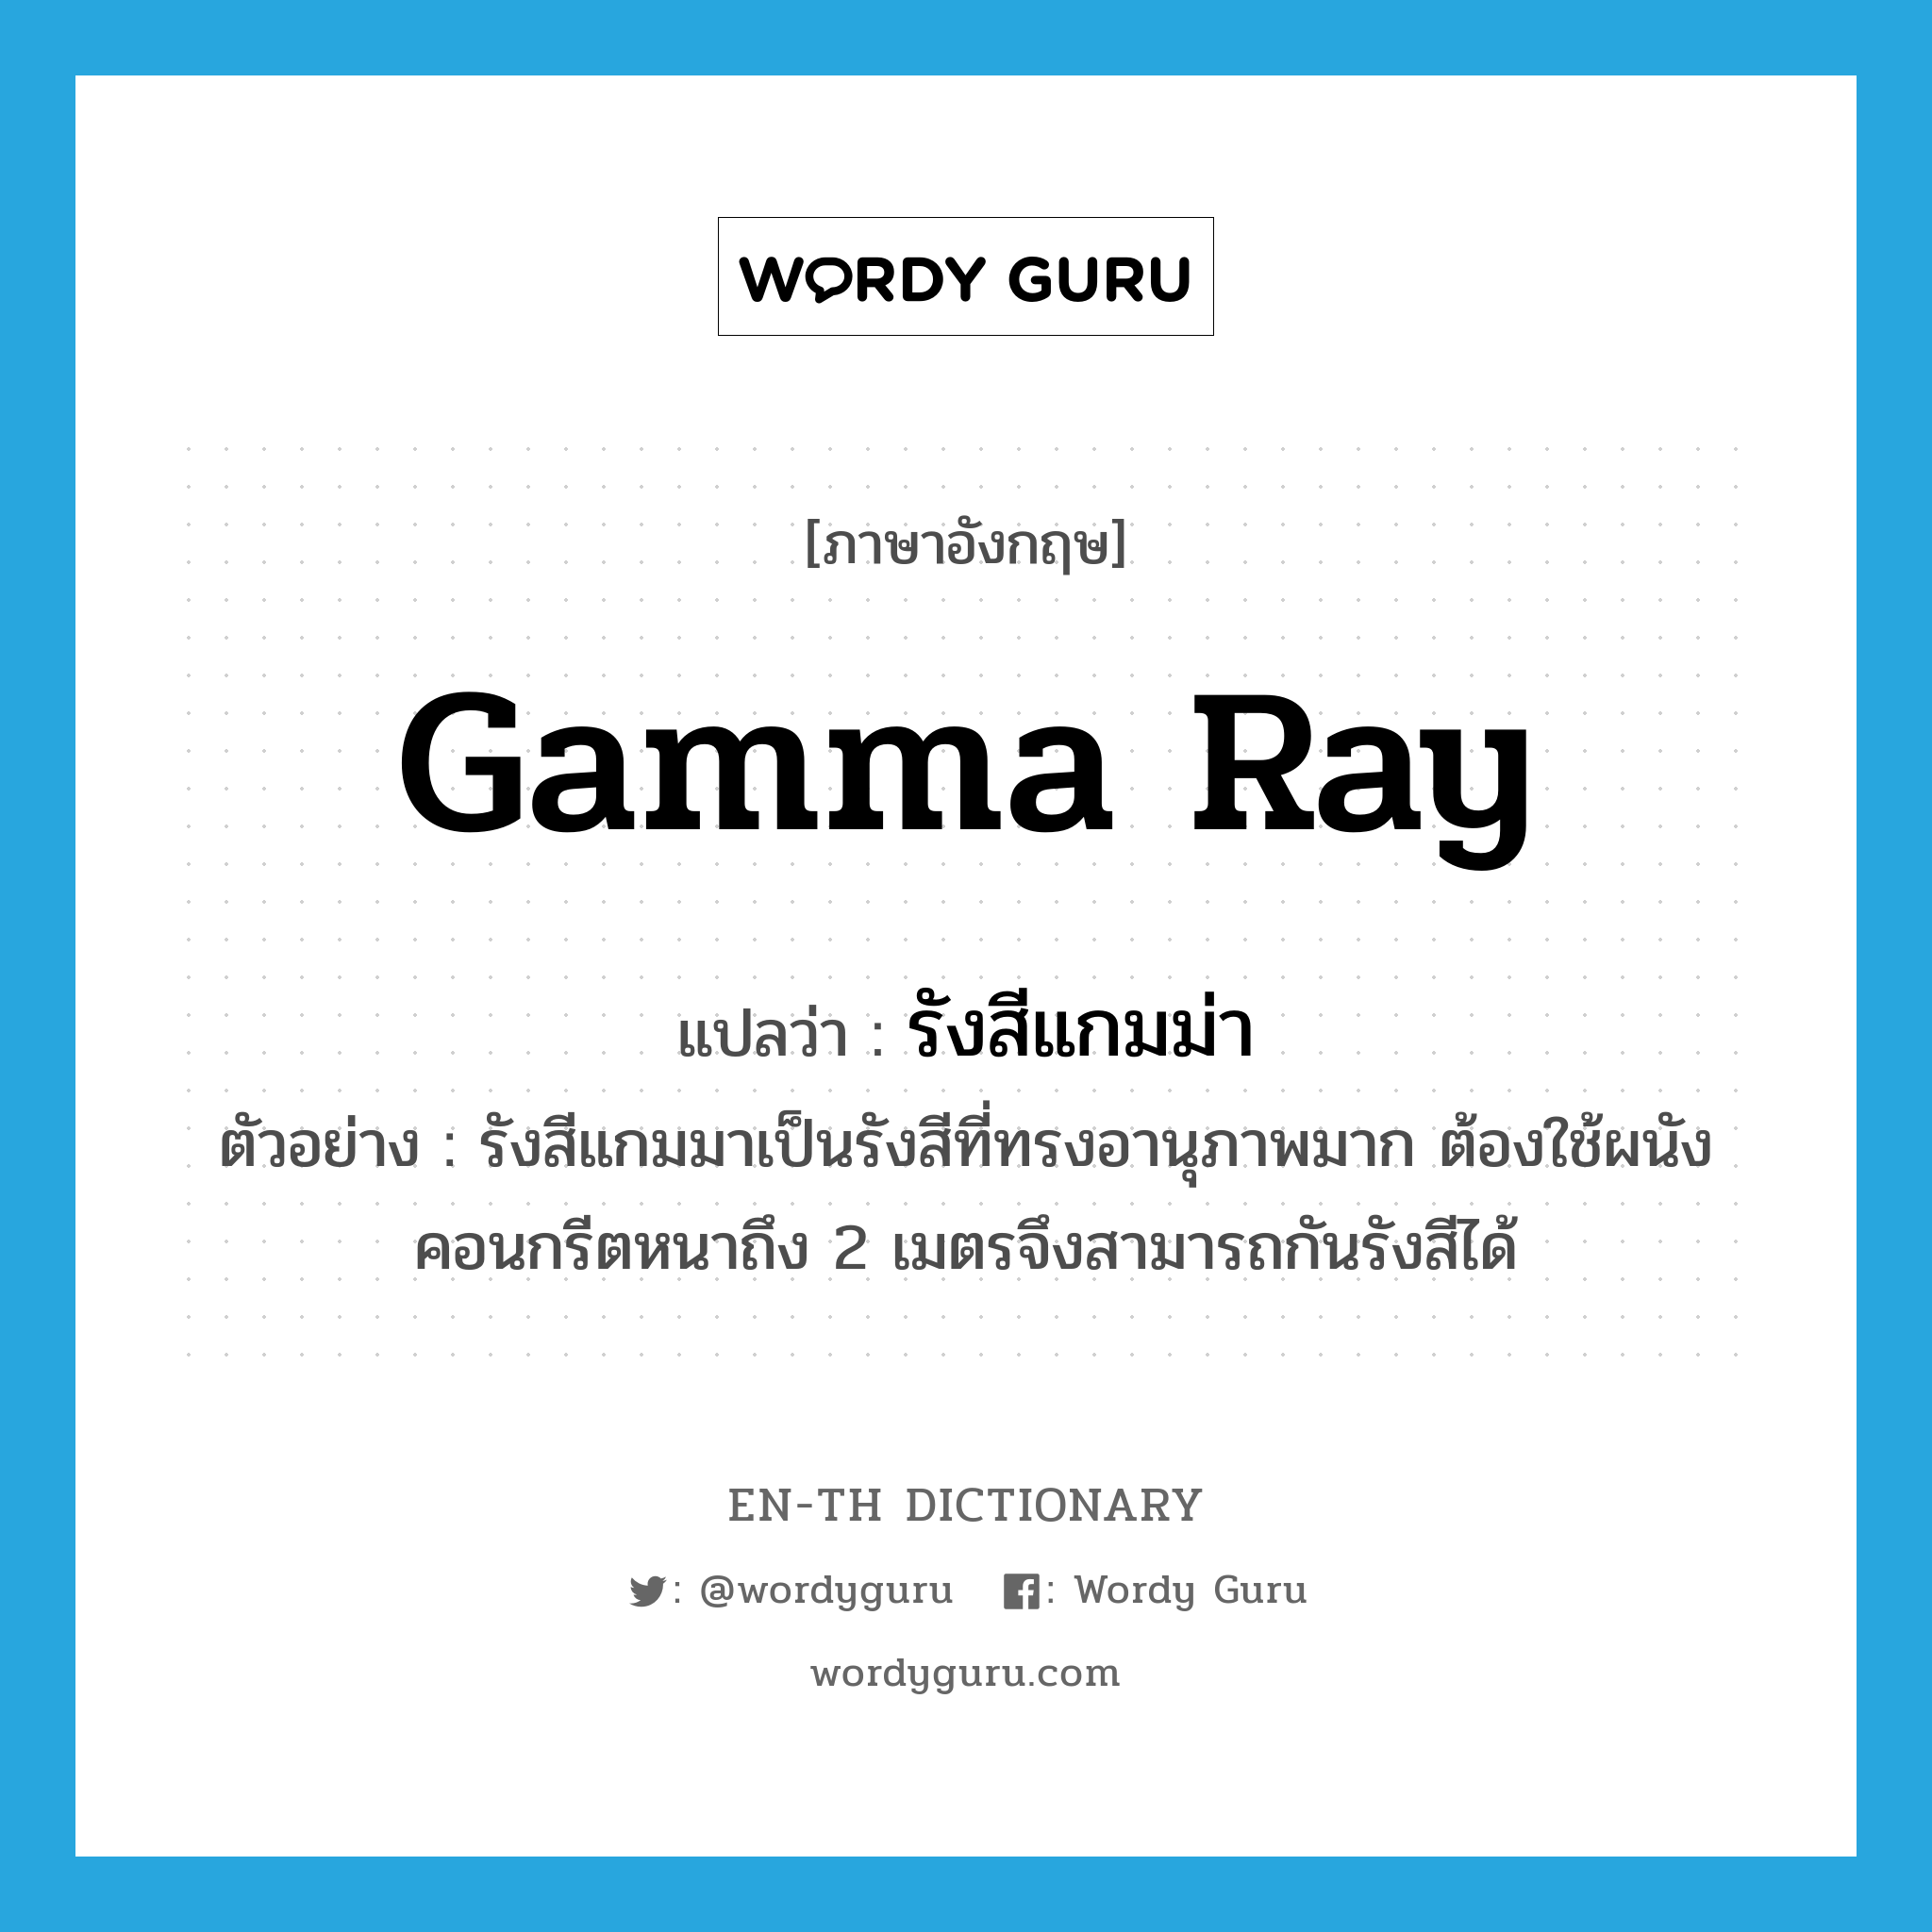 gamma ray แปลว่า?, คำศัพท์ภาษาอังกฤษ gamma ray แปลว่า รังสีแกมม่า ประเภท N ตัวอย่าง รังสีแกมมาเป็นรังสีที่ทรงอานุภาพมาก ต้องใช้ผนังคอนกรีตหนาถึง 2 เมตรจึงสามารถกันรังสีได้ หมวด N